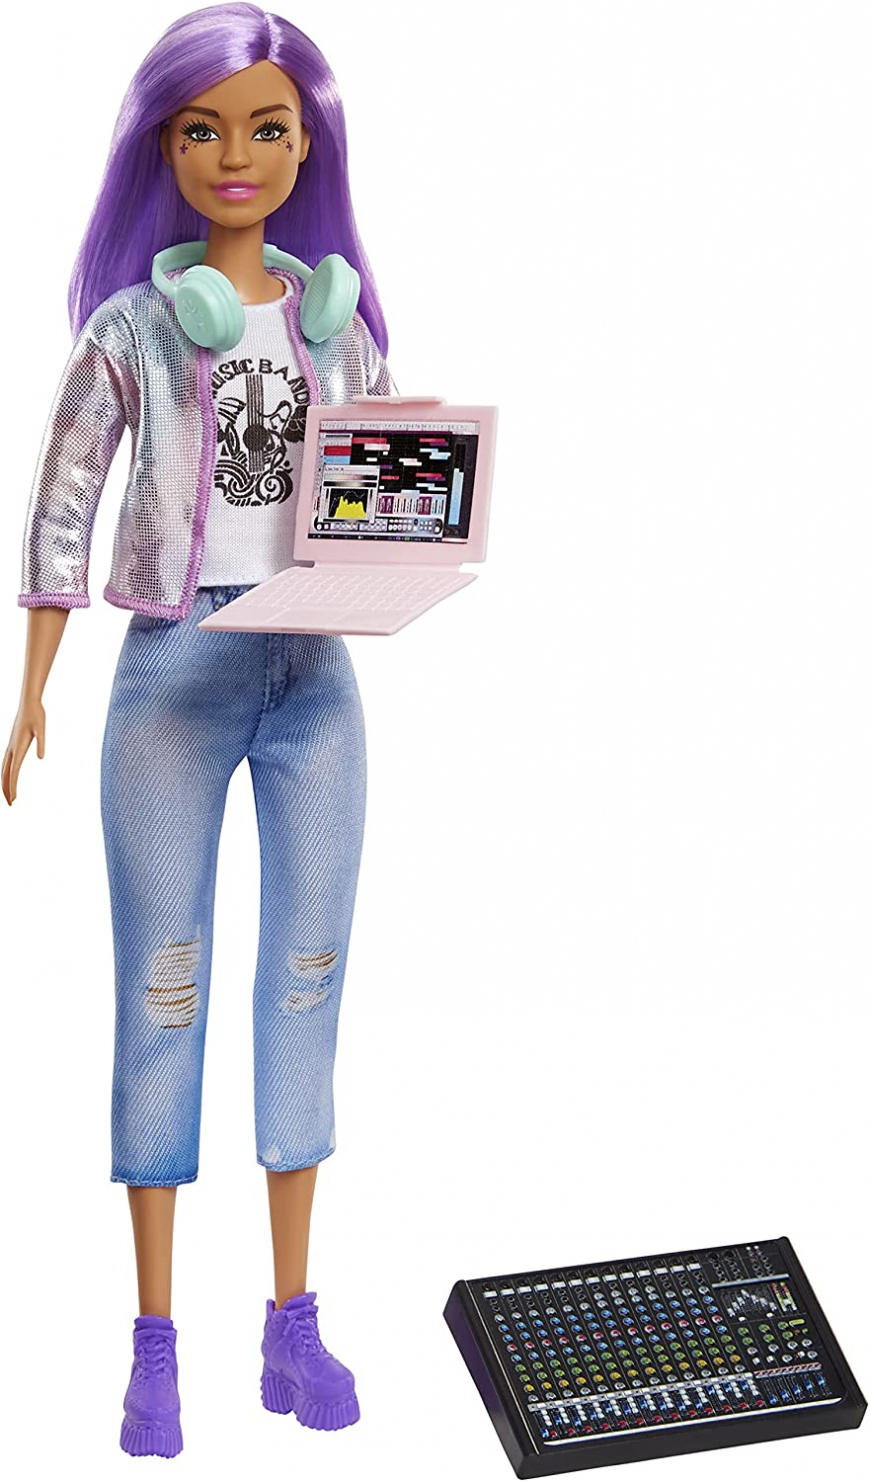 Barbie Career of The Year GTN80 doll